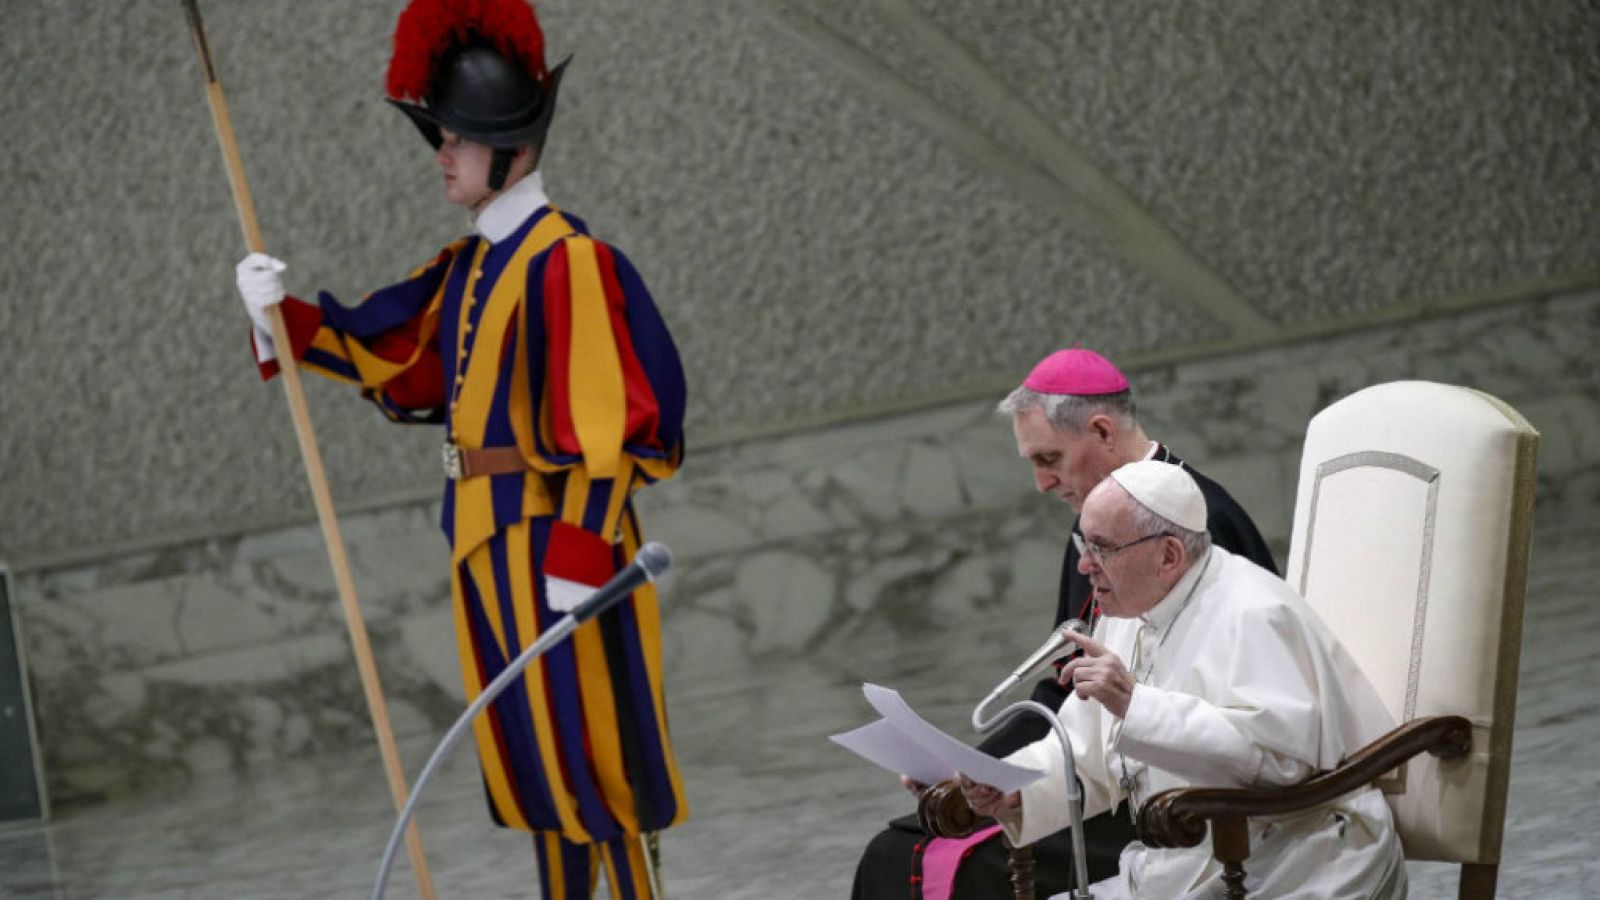  14 horas - El papa anuncia "medidas concretas y eficaces" contra los abusos - Escuchar ahora